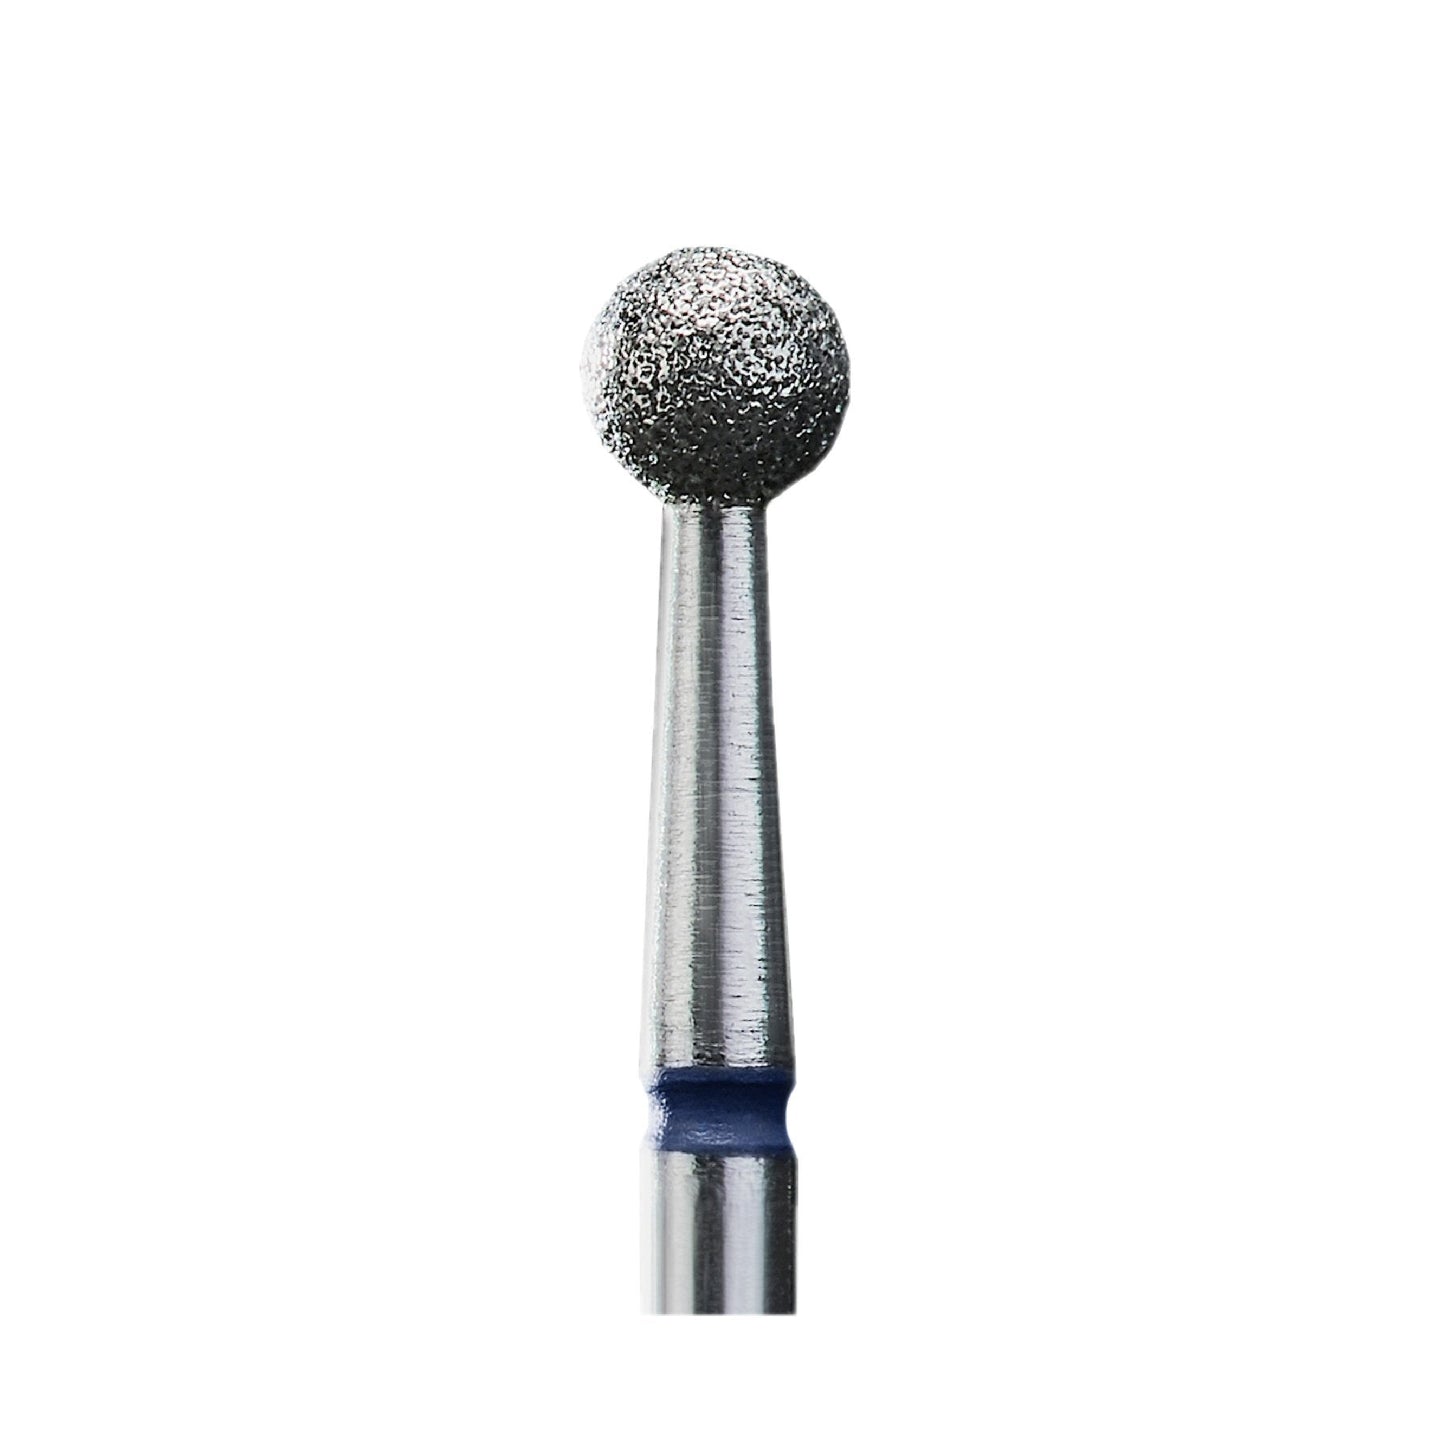 Diamond nail drill bit, “ball”, blue, head diameter 4 mm